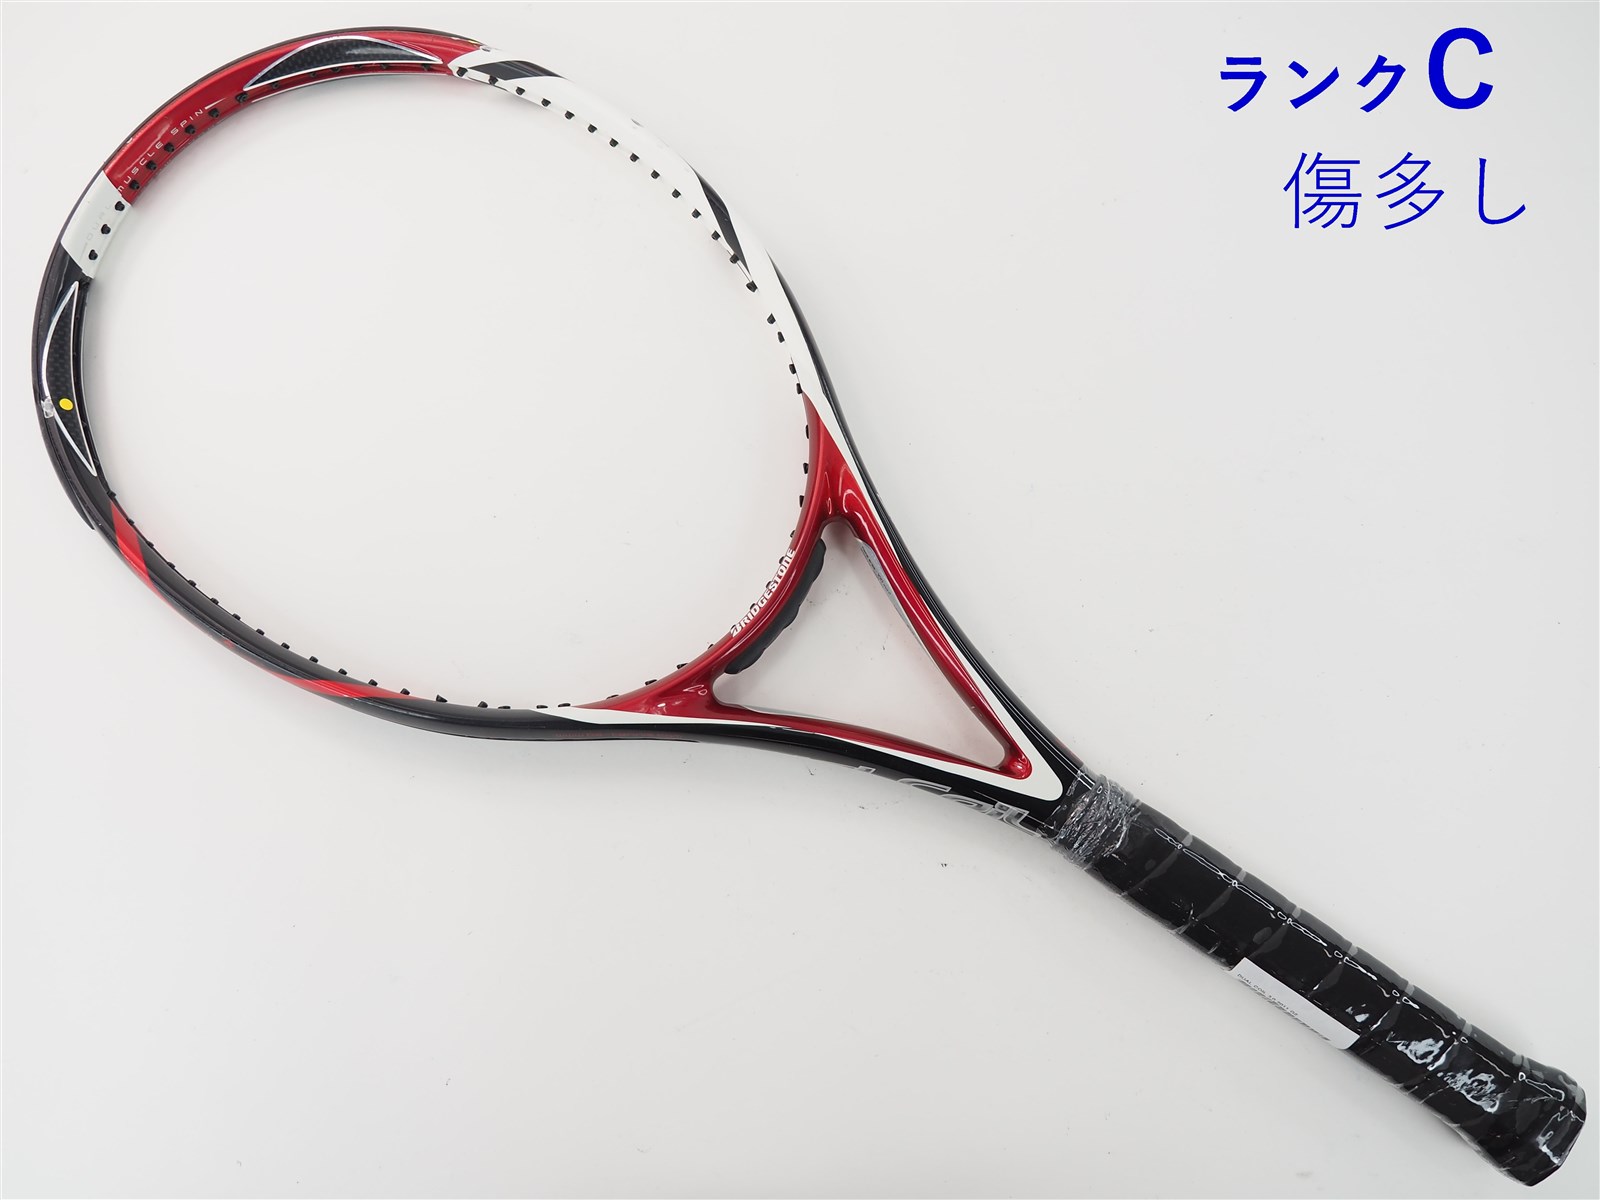 【中古】ブリヂストン デュアル コイル 3.0 2011年モデルBRIDGESTONE DUAL COIL 3.0 2011(G2)【中古  テニスラケット】